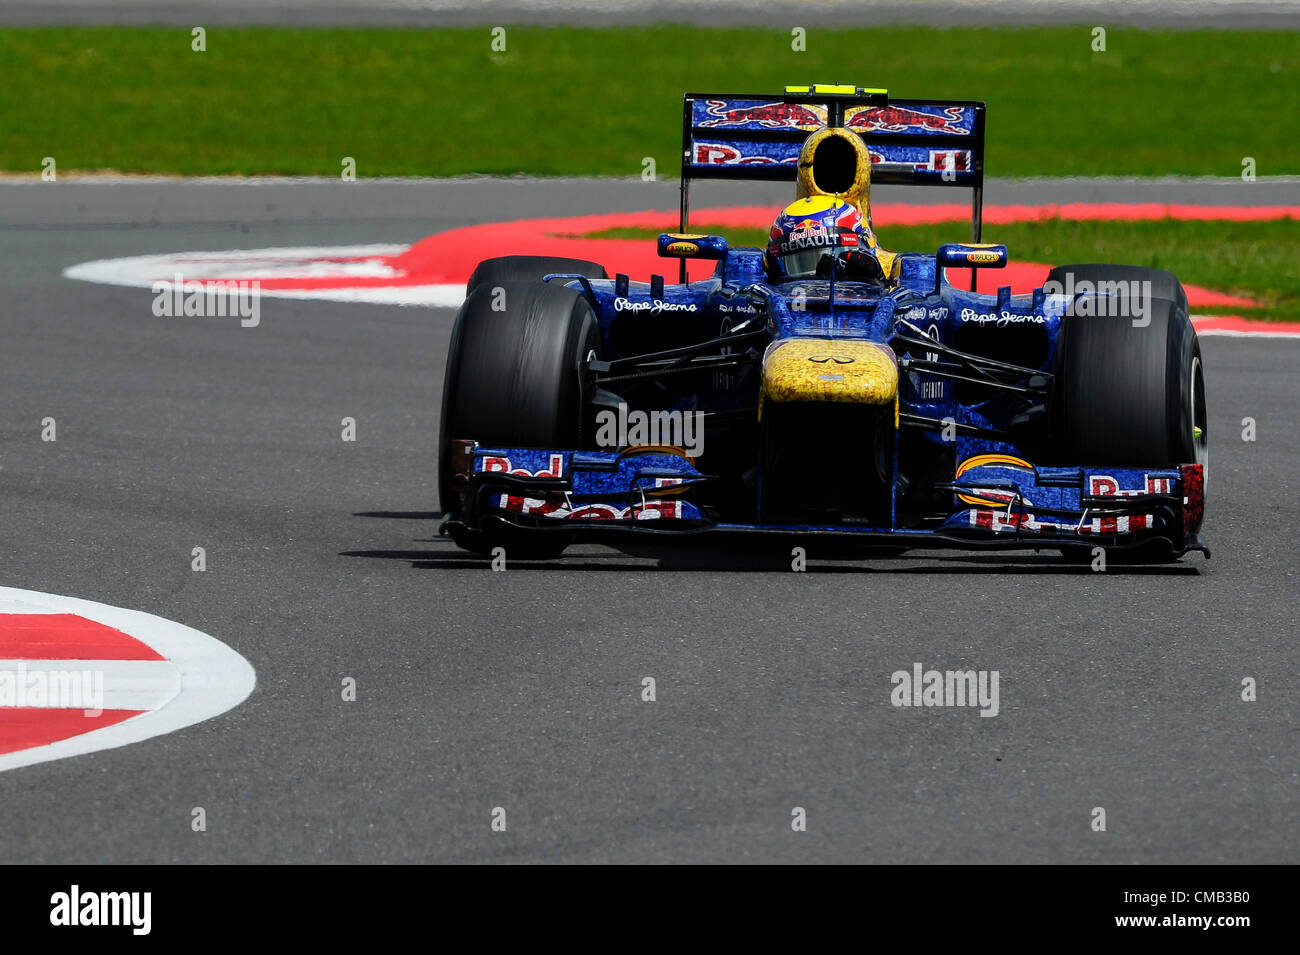 08.07.2012 Towcester, England. Mark Webber aus Australien und Red Bull Racing in Aktion während des Rennens beim britischen Grand Prix Santander, Runde 9 der 2012 FIA Formel 1 Weltmeisterschaft in Silverstone. Stockfoto